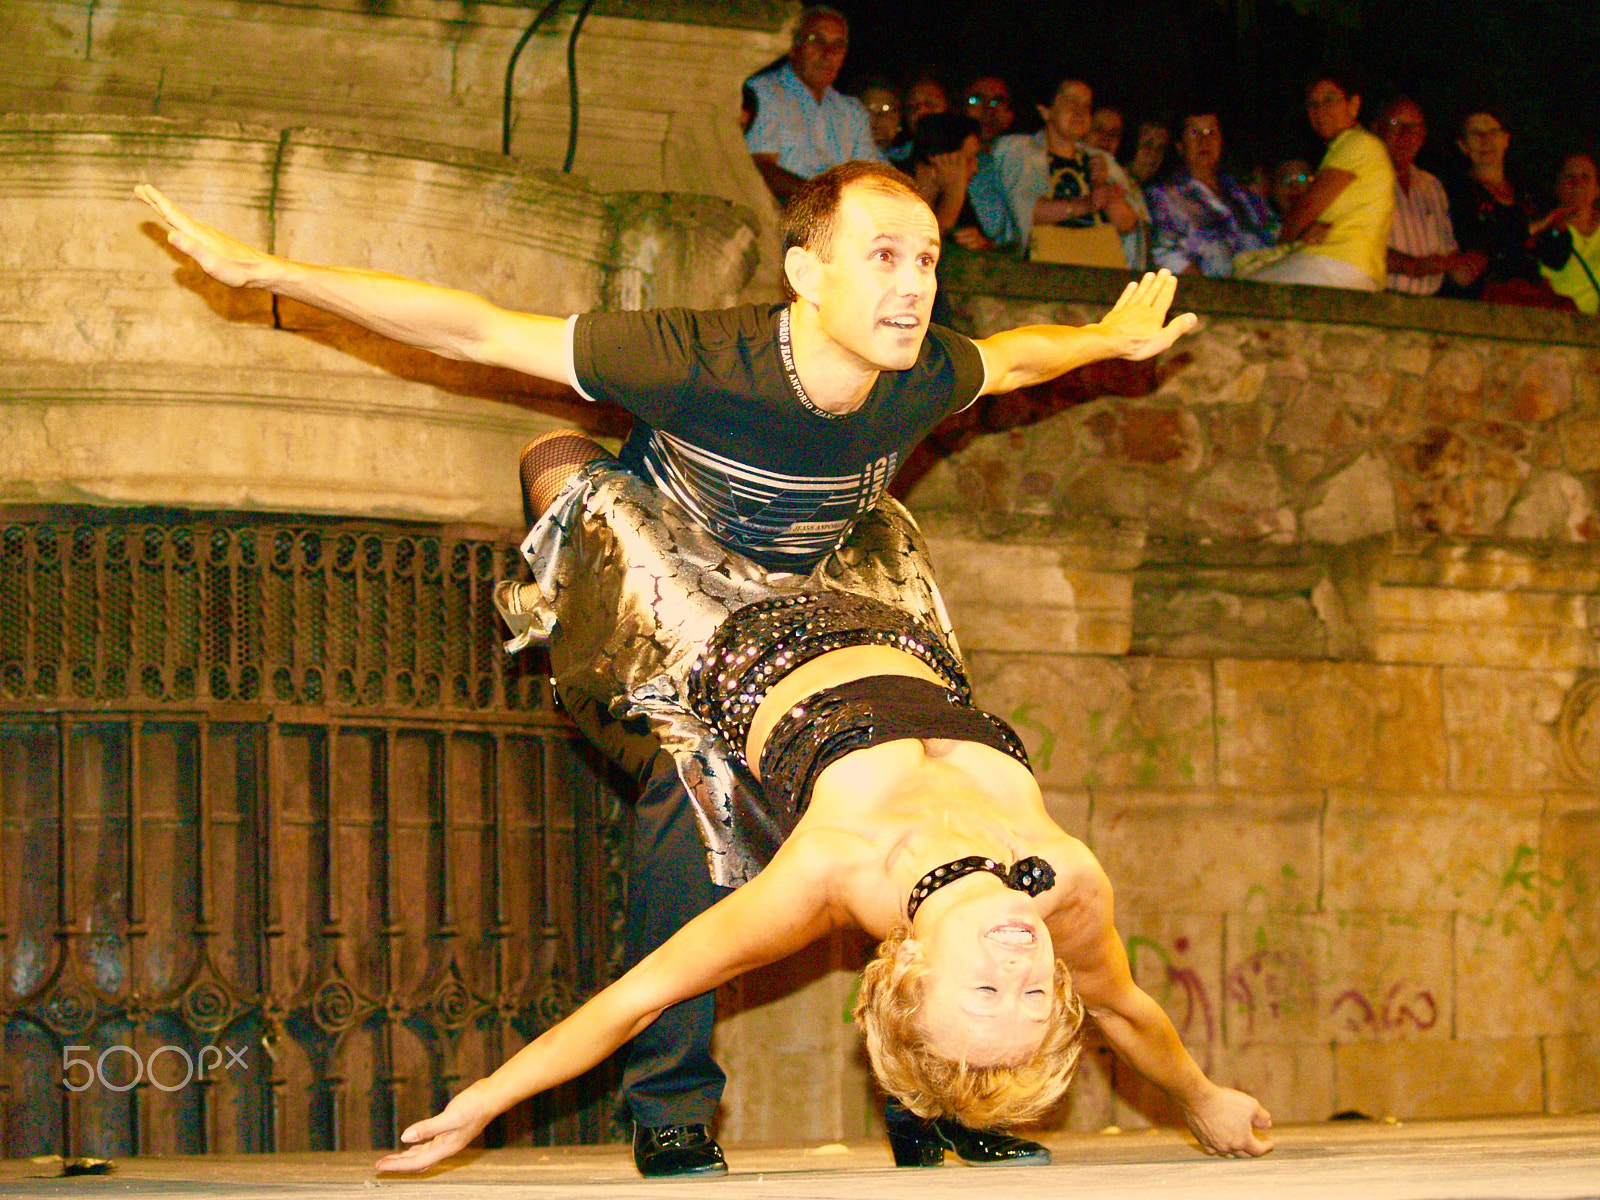 Olympus Zuiko Digital 40-150mm F3.5-4.5 sample photo. Two dancers in salamanca, spain photography